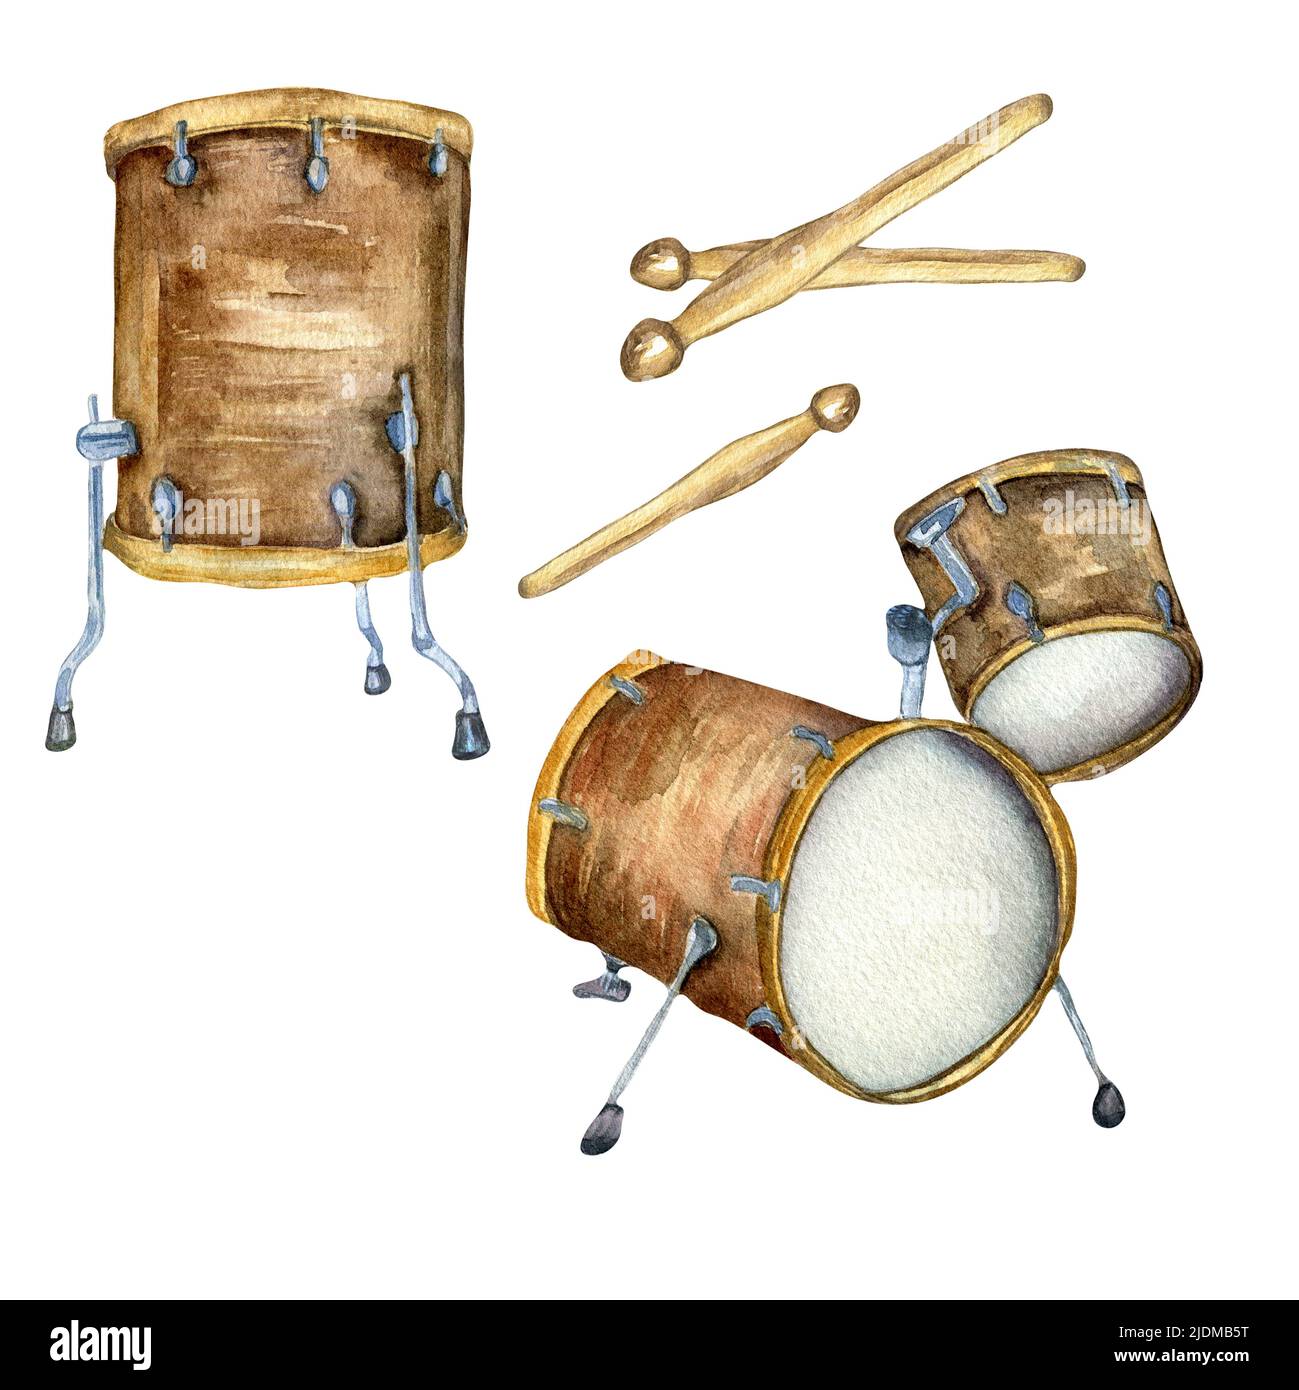 Kit de batterie, Drumsticks aquarelle illustration isolée. Instrument de musique peint à la main. Percussion instrument de jazz, rock, festival. Elément de conception Banque D'Images